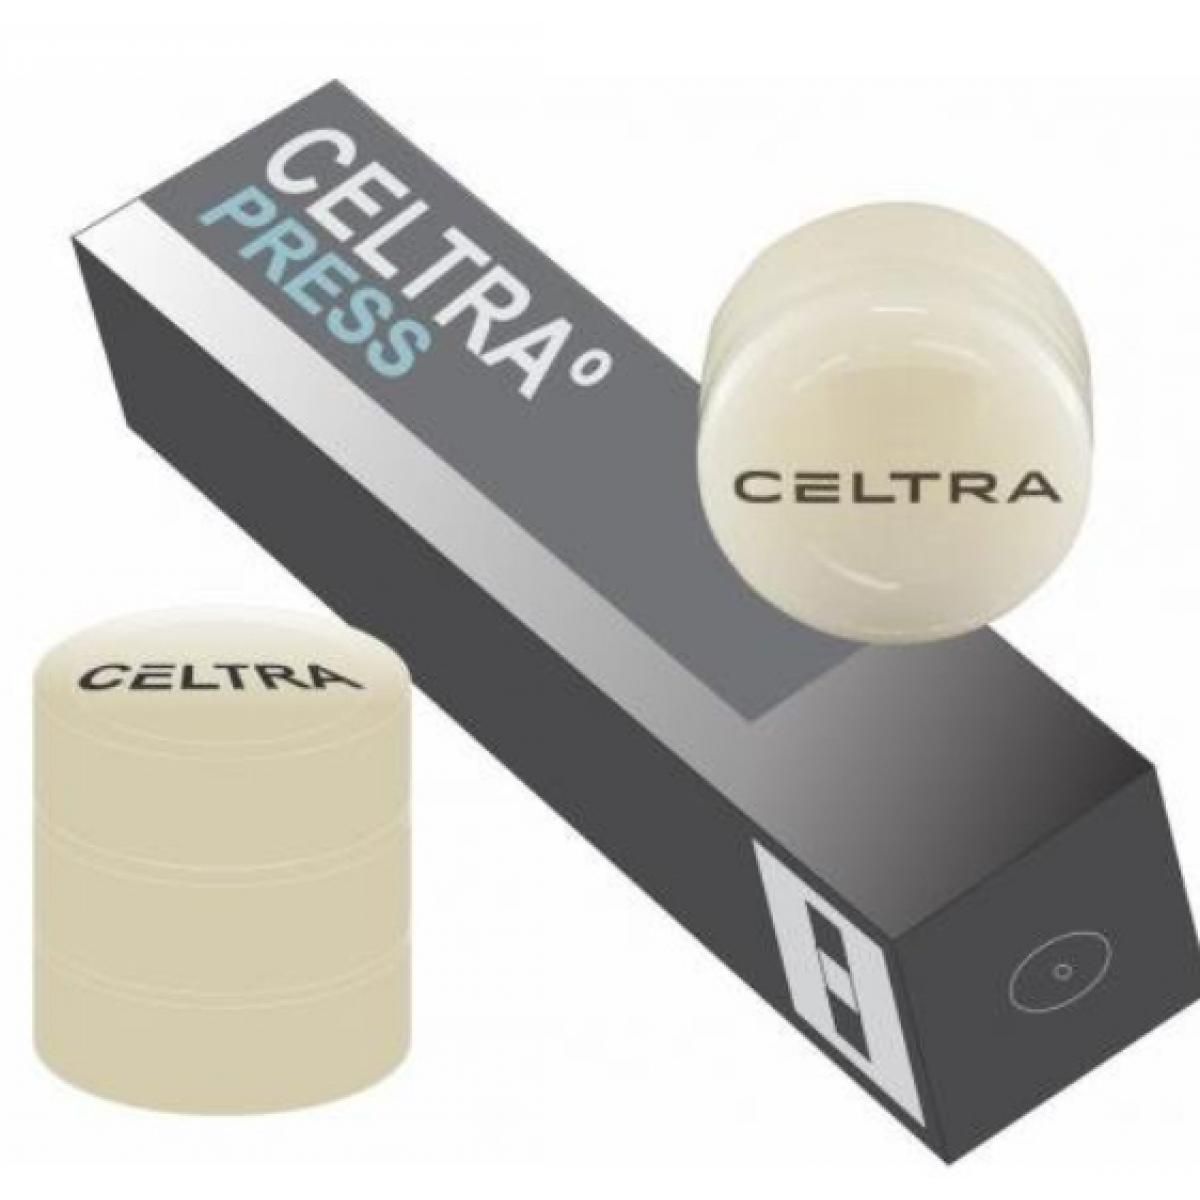 CELTRA PRESS LT D2 5 X 3 GR DENTSPLY -